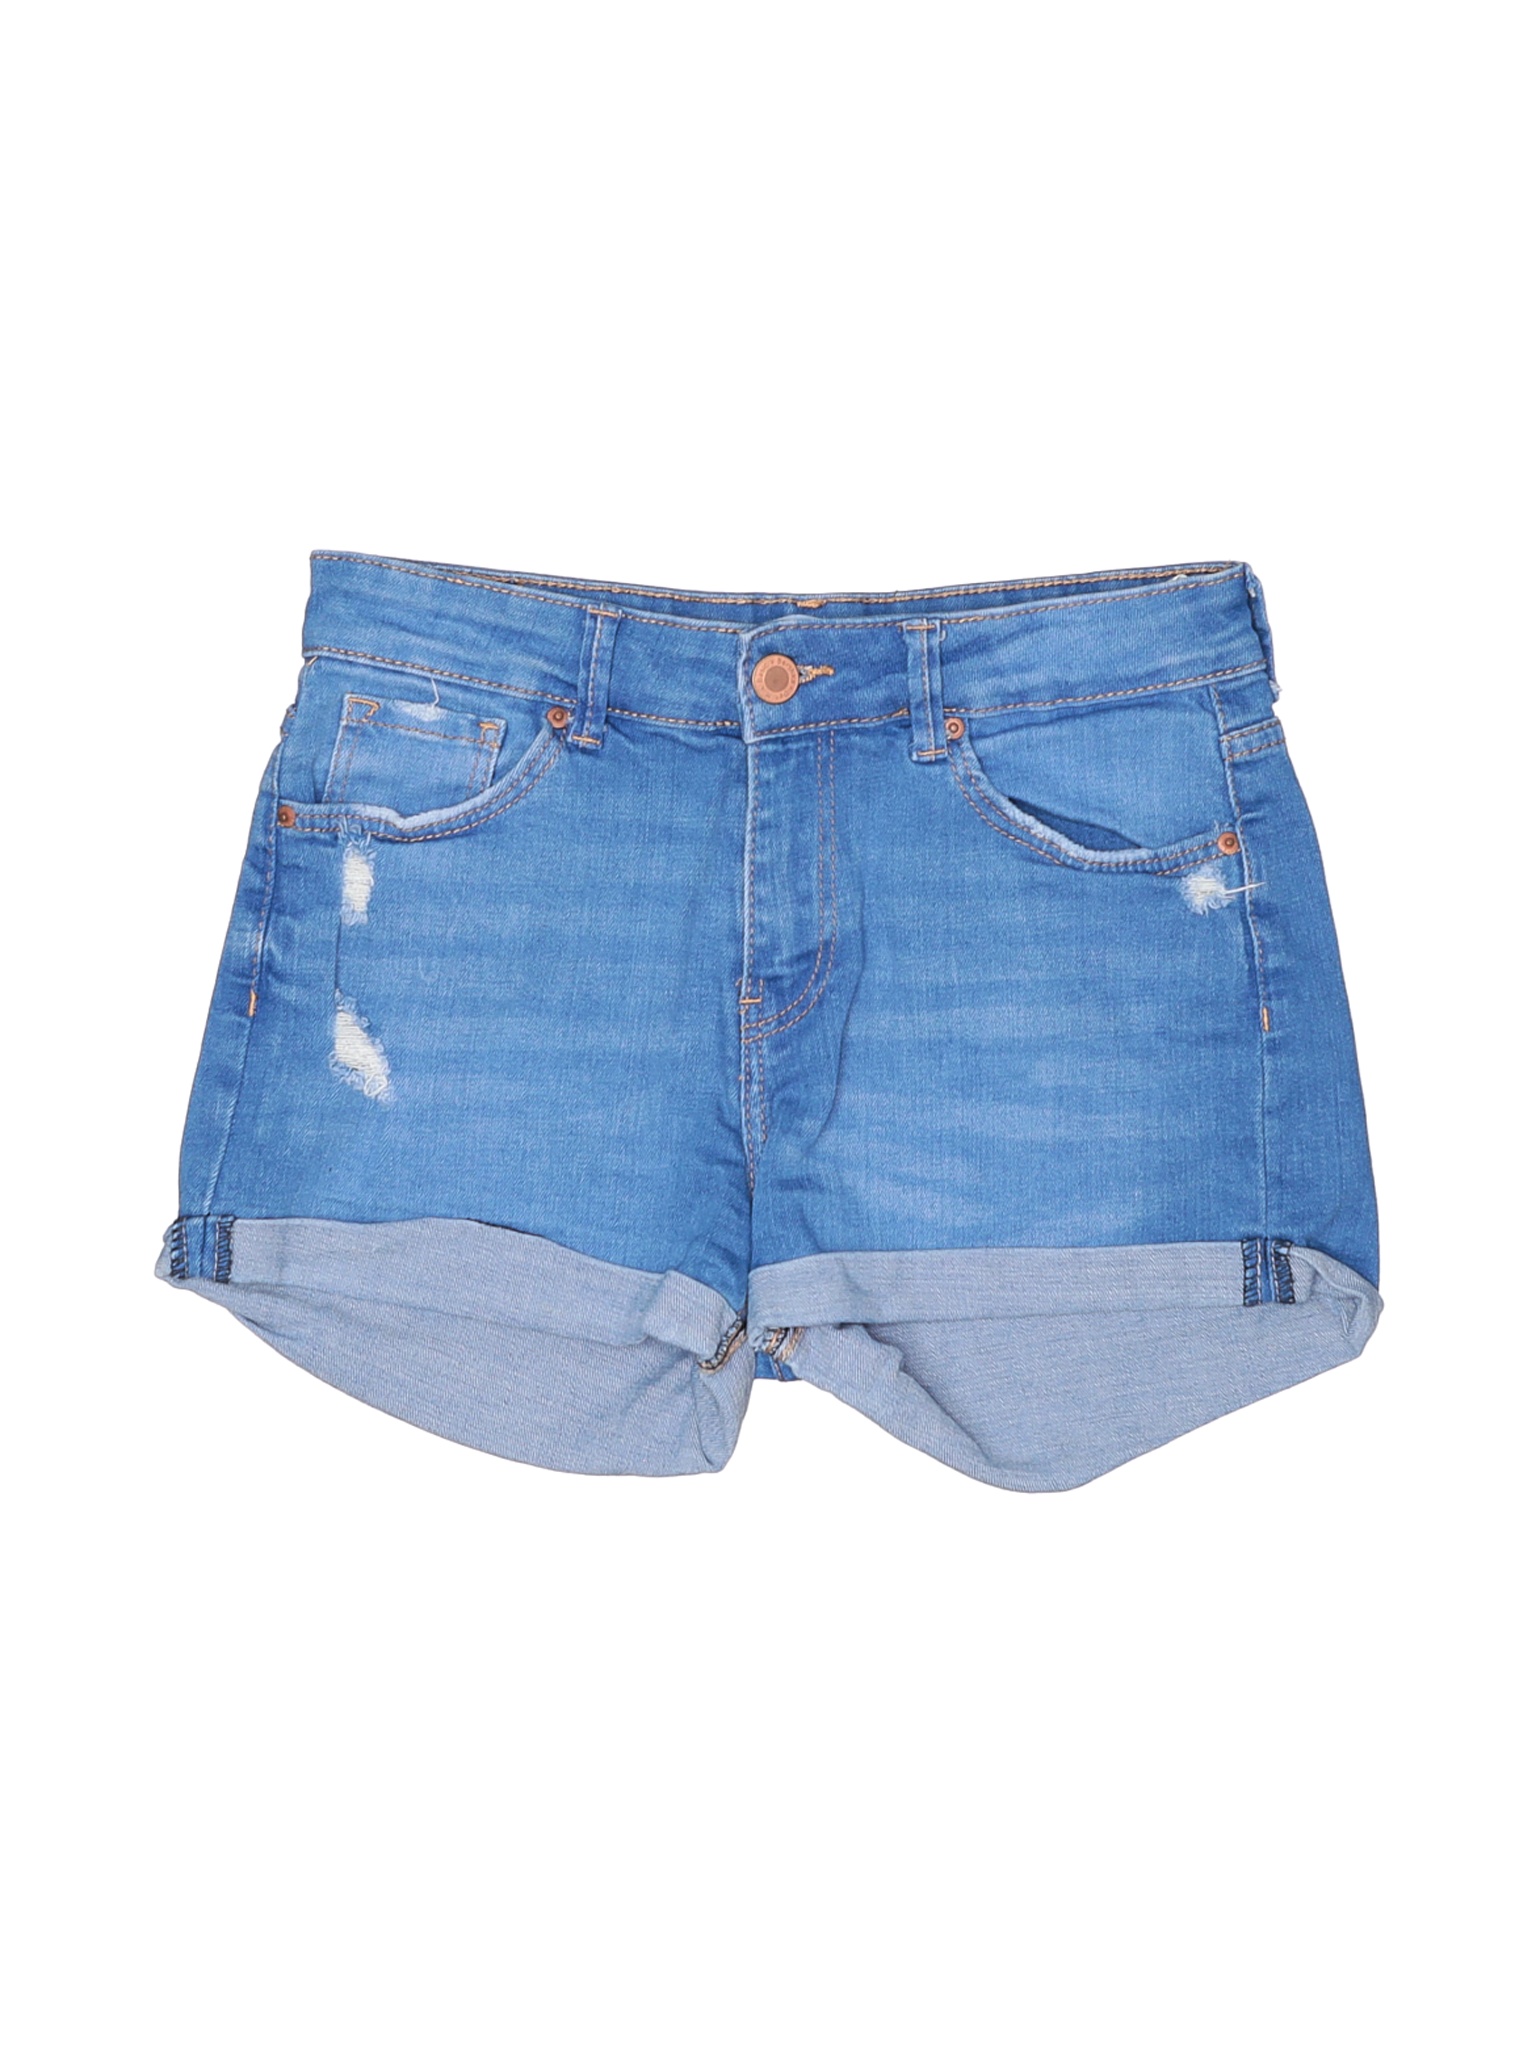 Bershka Women Blue Denim Shorts 2 | eBay